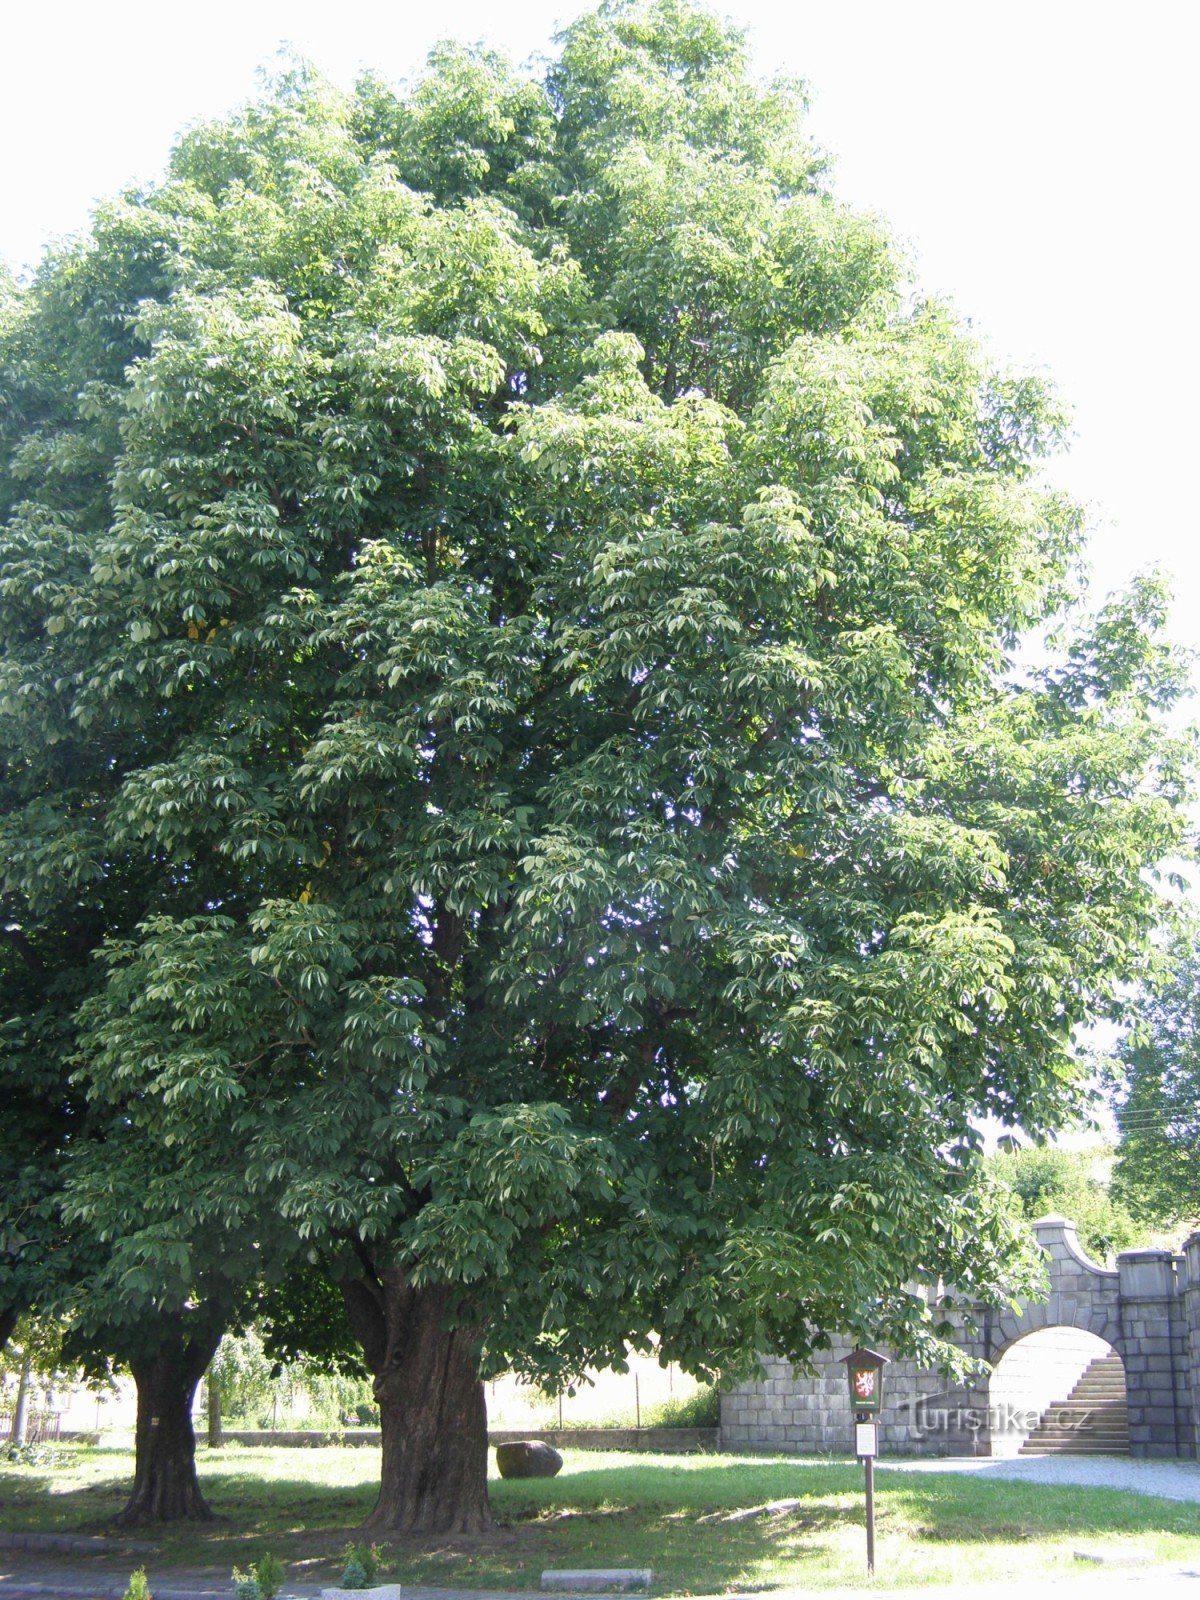 Zlaté Hory - chestnut trees near the Church of the Assumption of the Virgin Mary